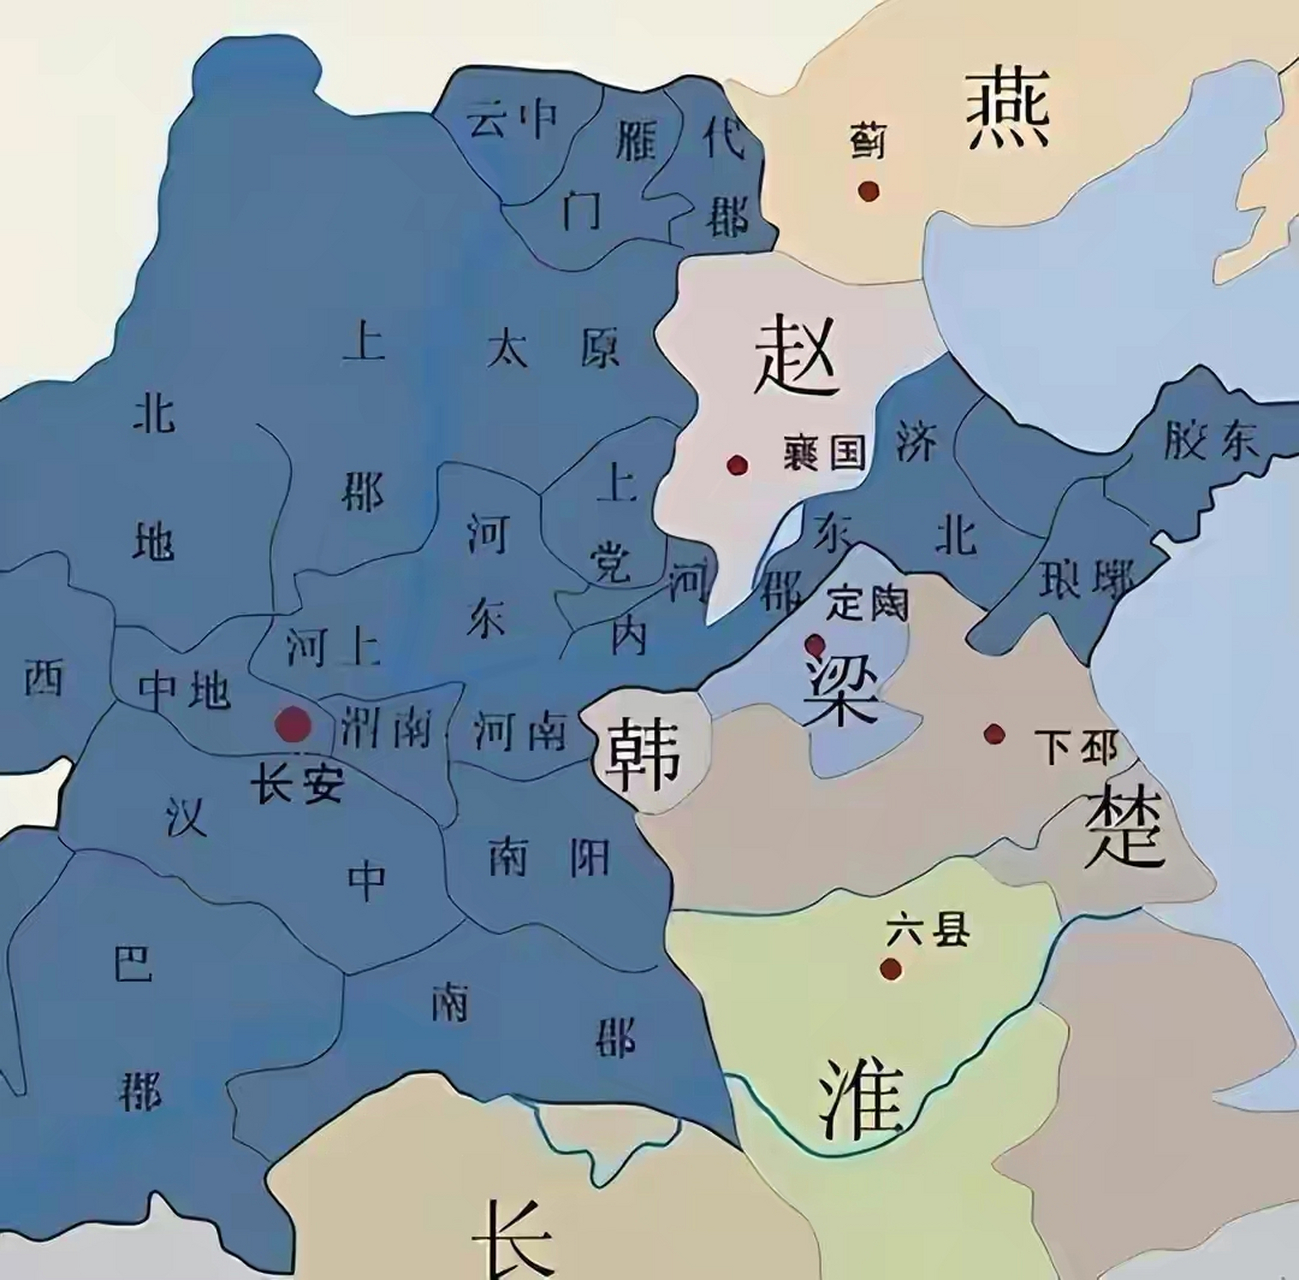 西汉初期郡国共存形势图 幸亏景帝时期打赢了七王之乱这场战争,不然